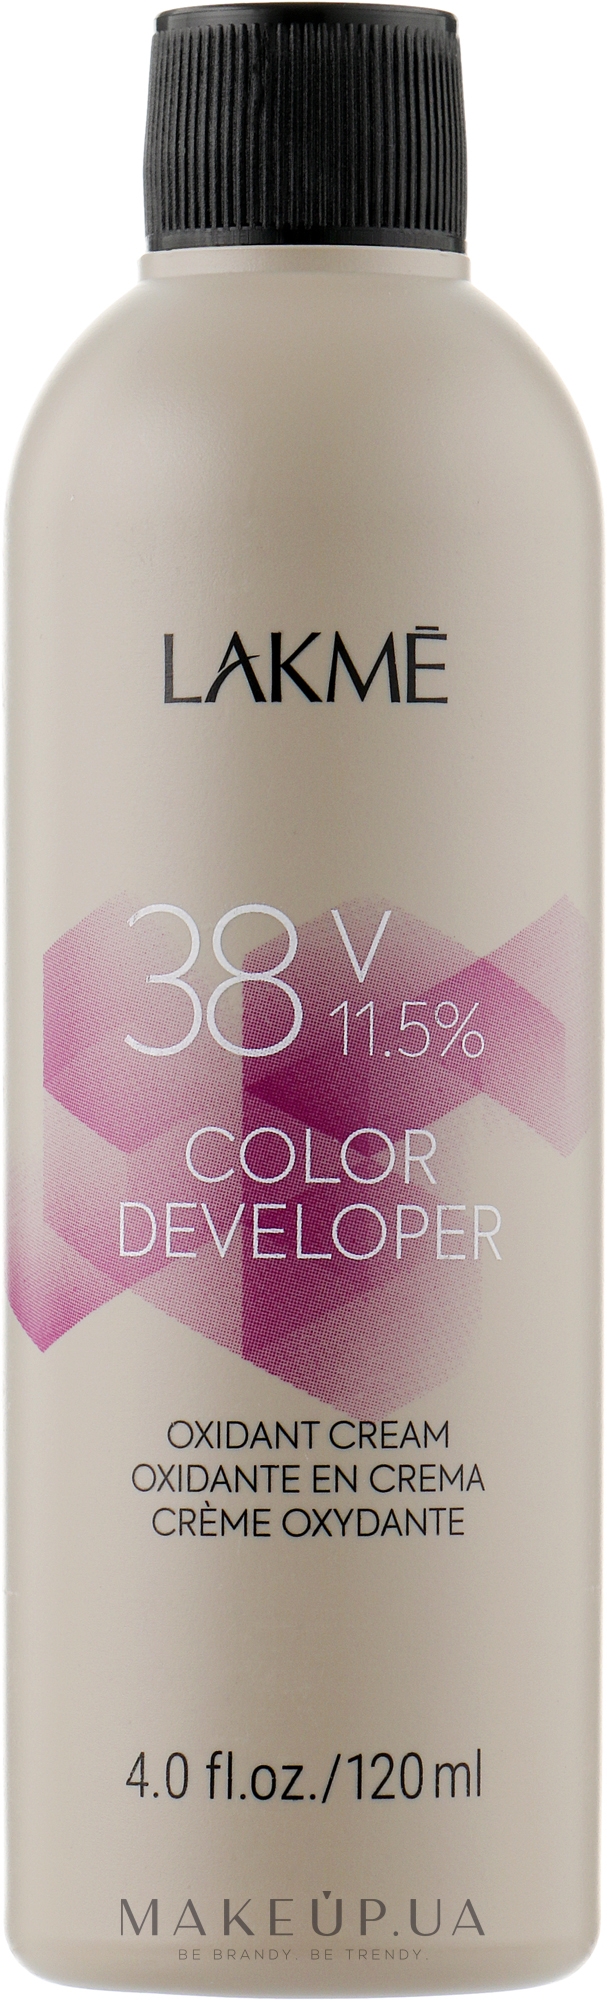 Крем-окислювач - Lakme Color Developer 38V (11,5%) — фото 120ml